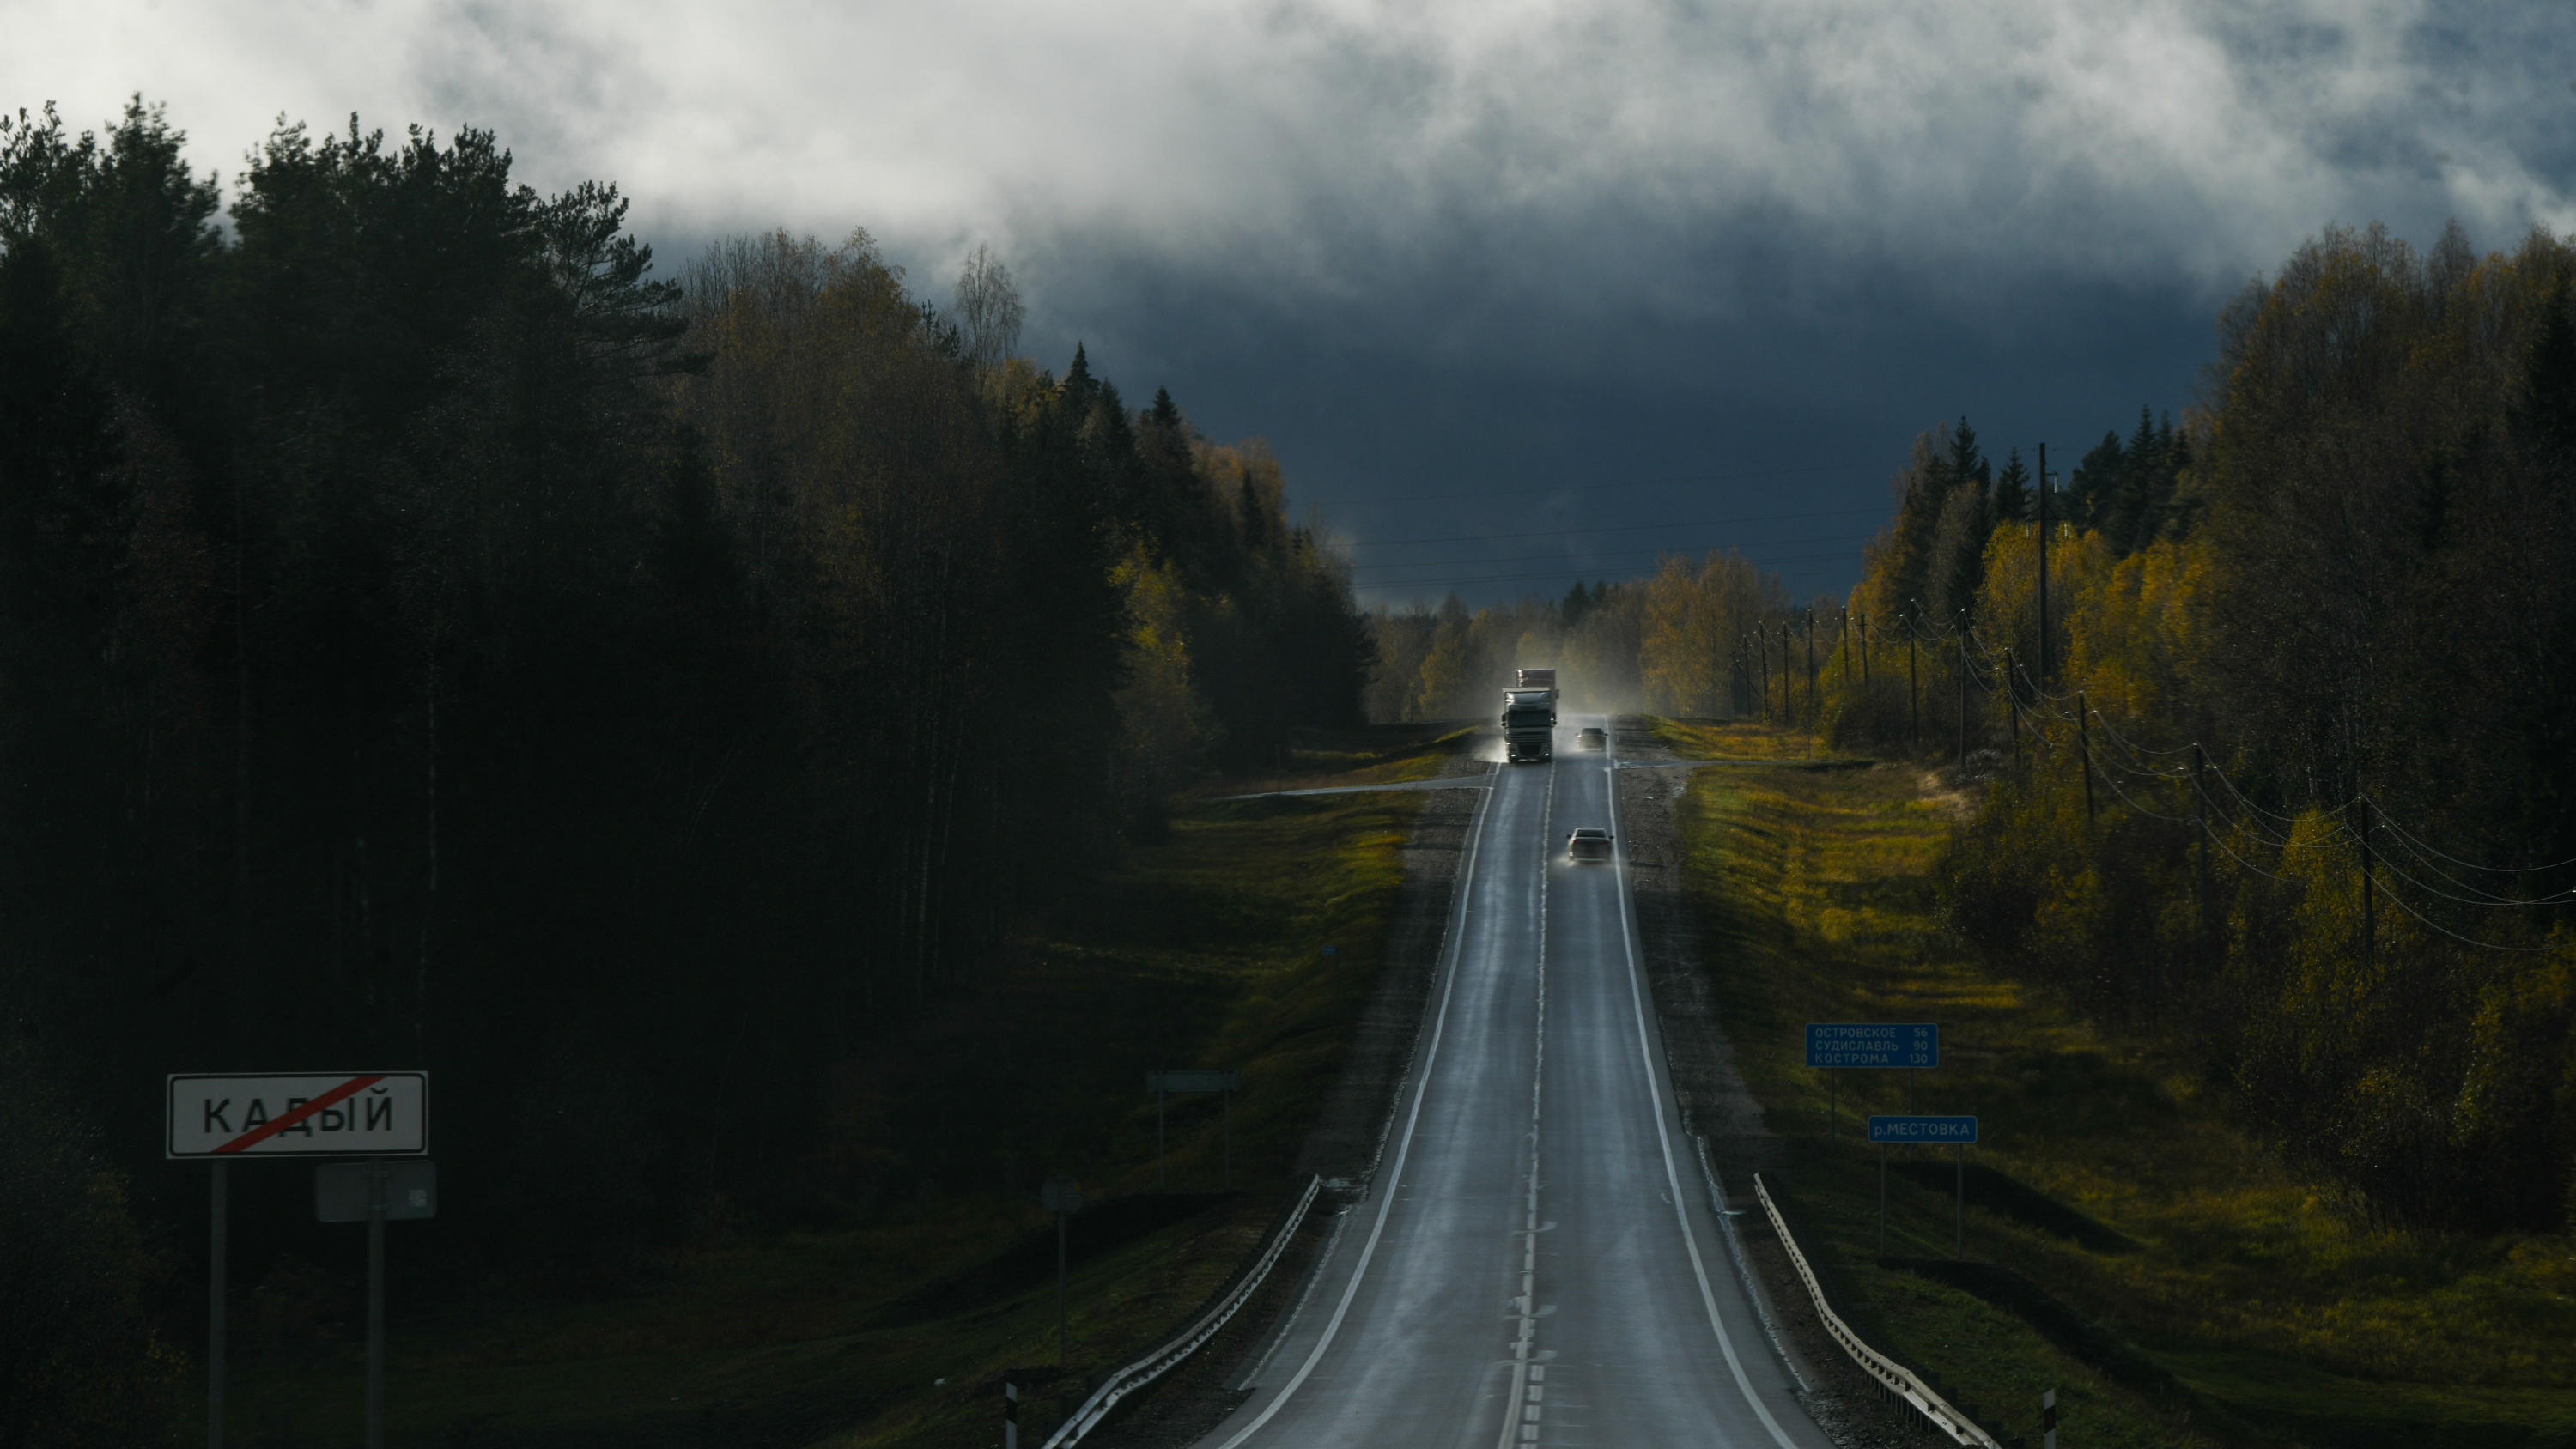 1800 километров свежей осени: фото из окна автомобиля, который проехал от Екатеринбурга до Москвы